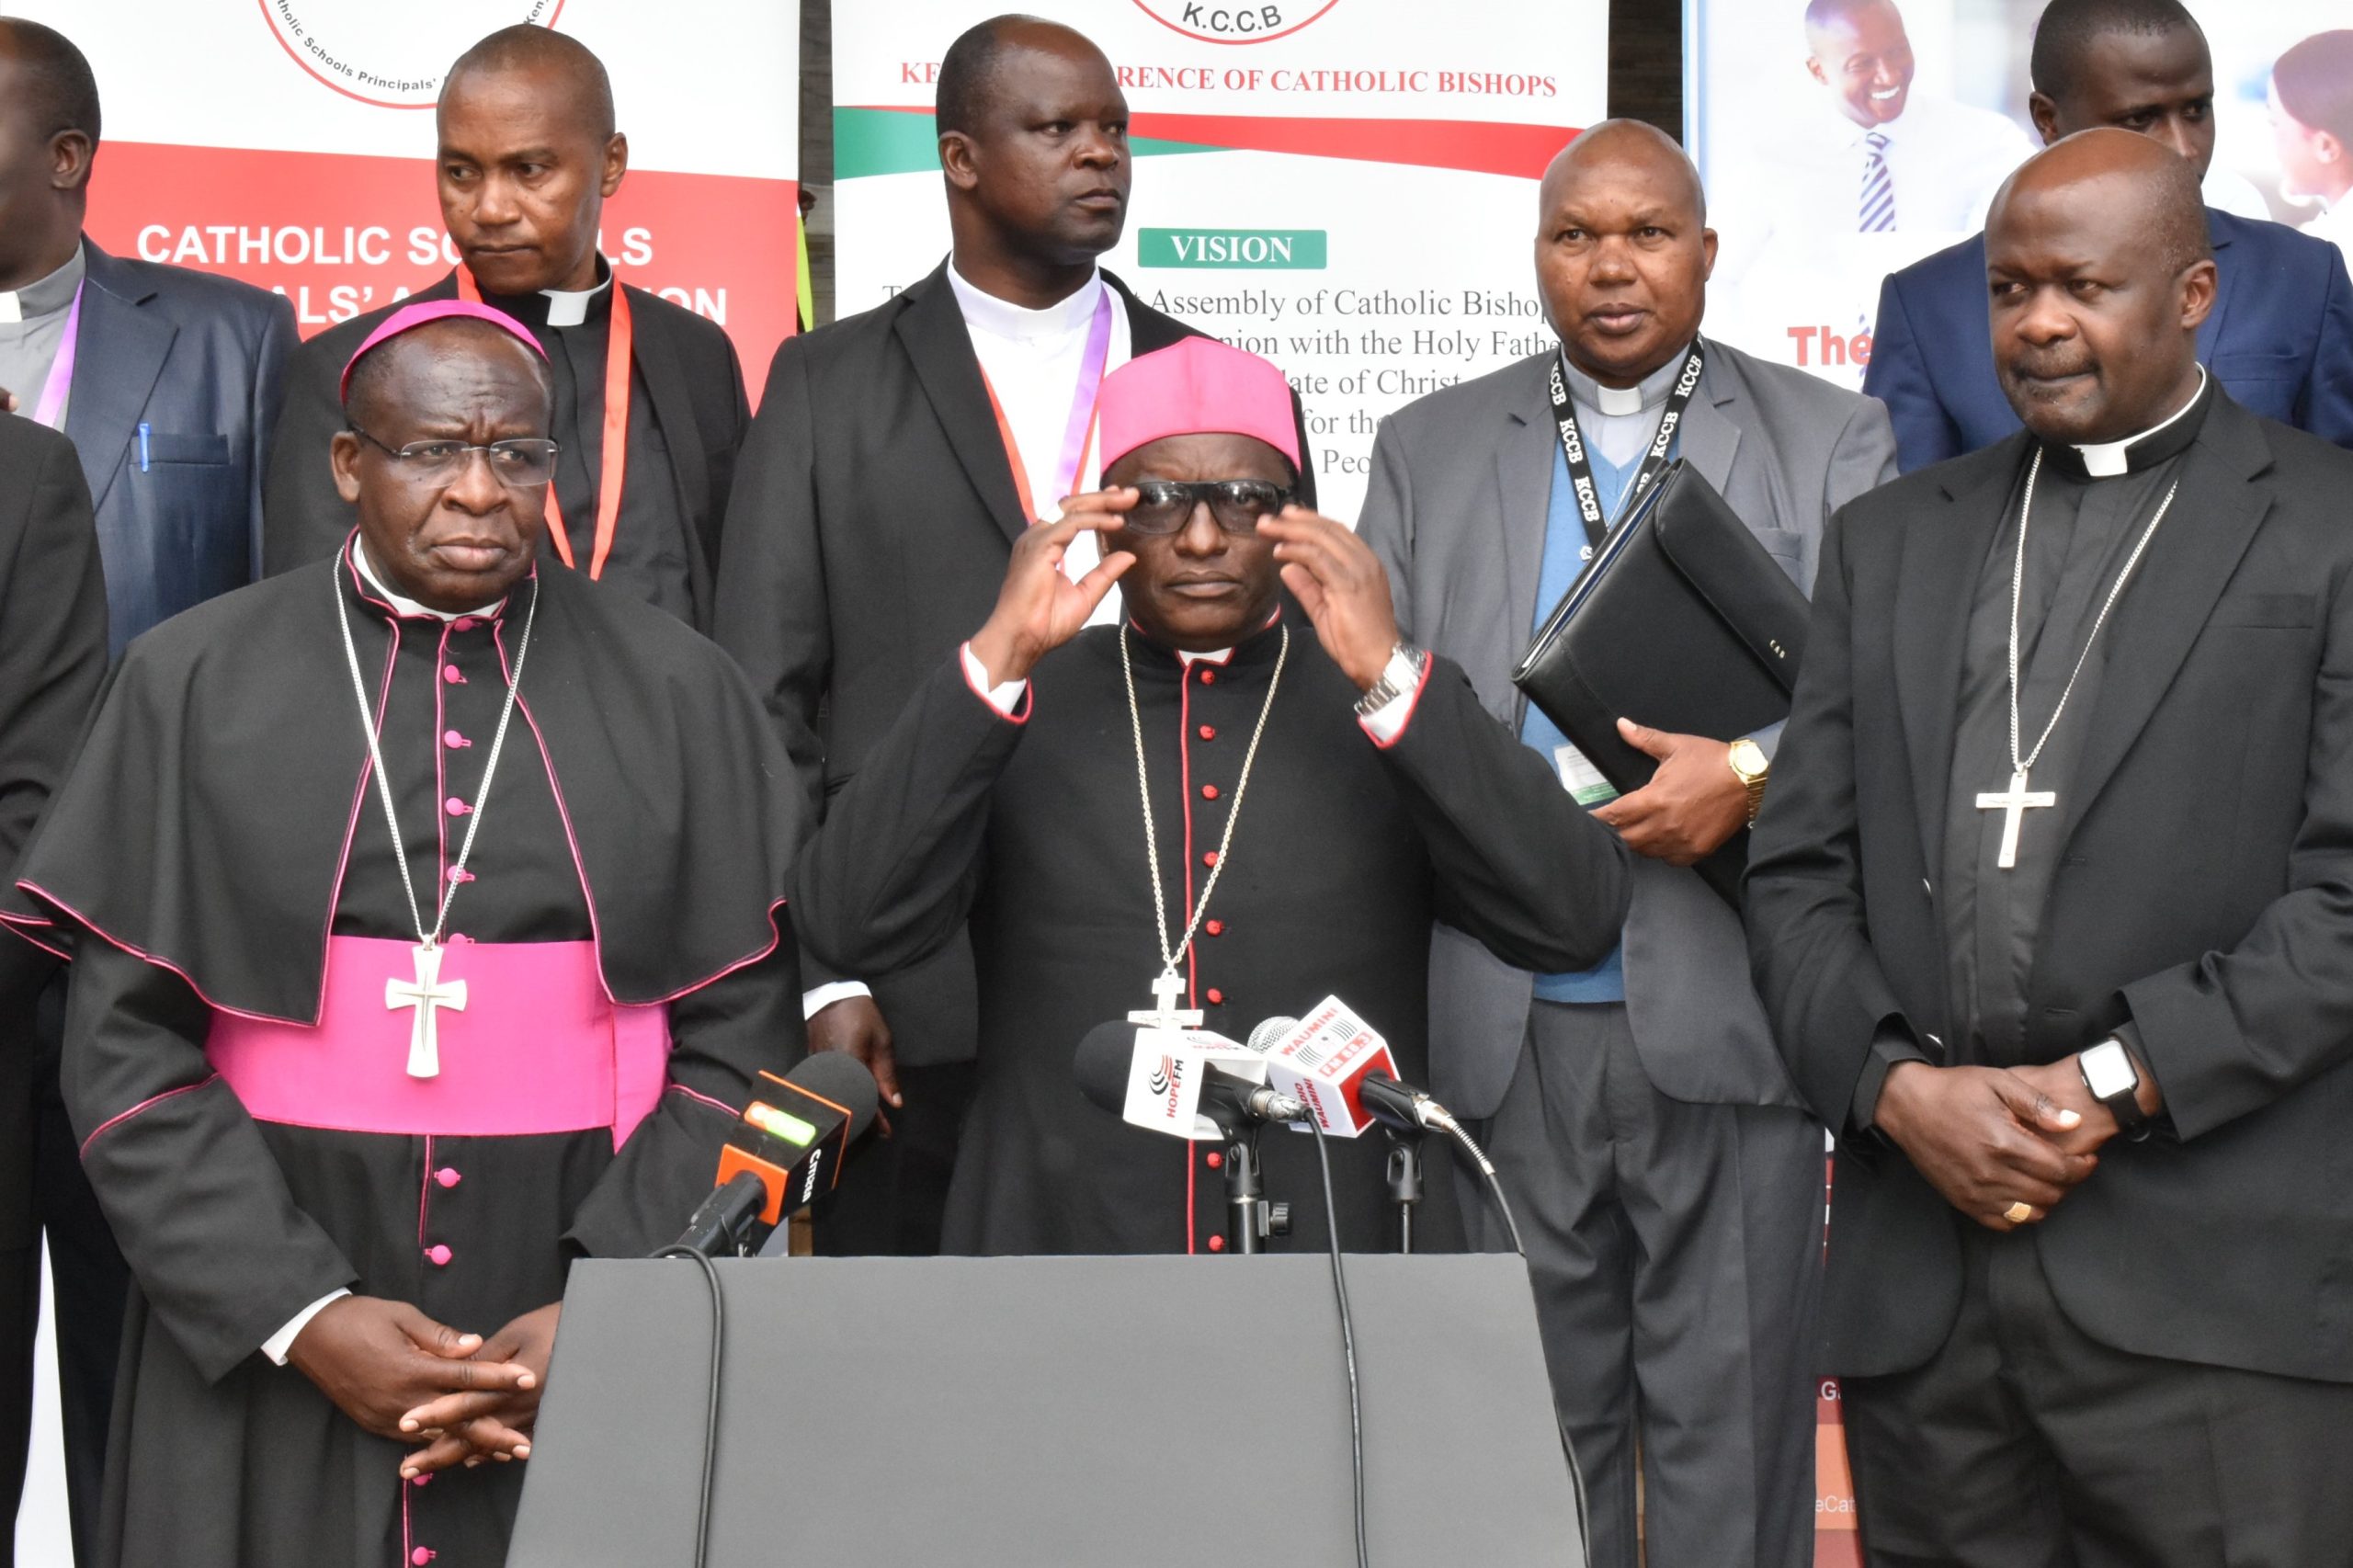 Catholic Bishops concern over bipartisan talks